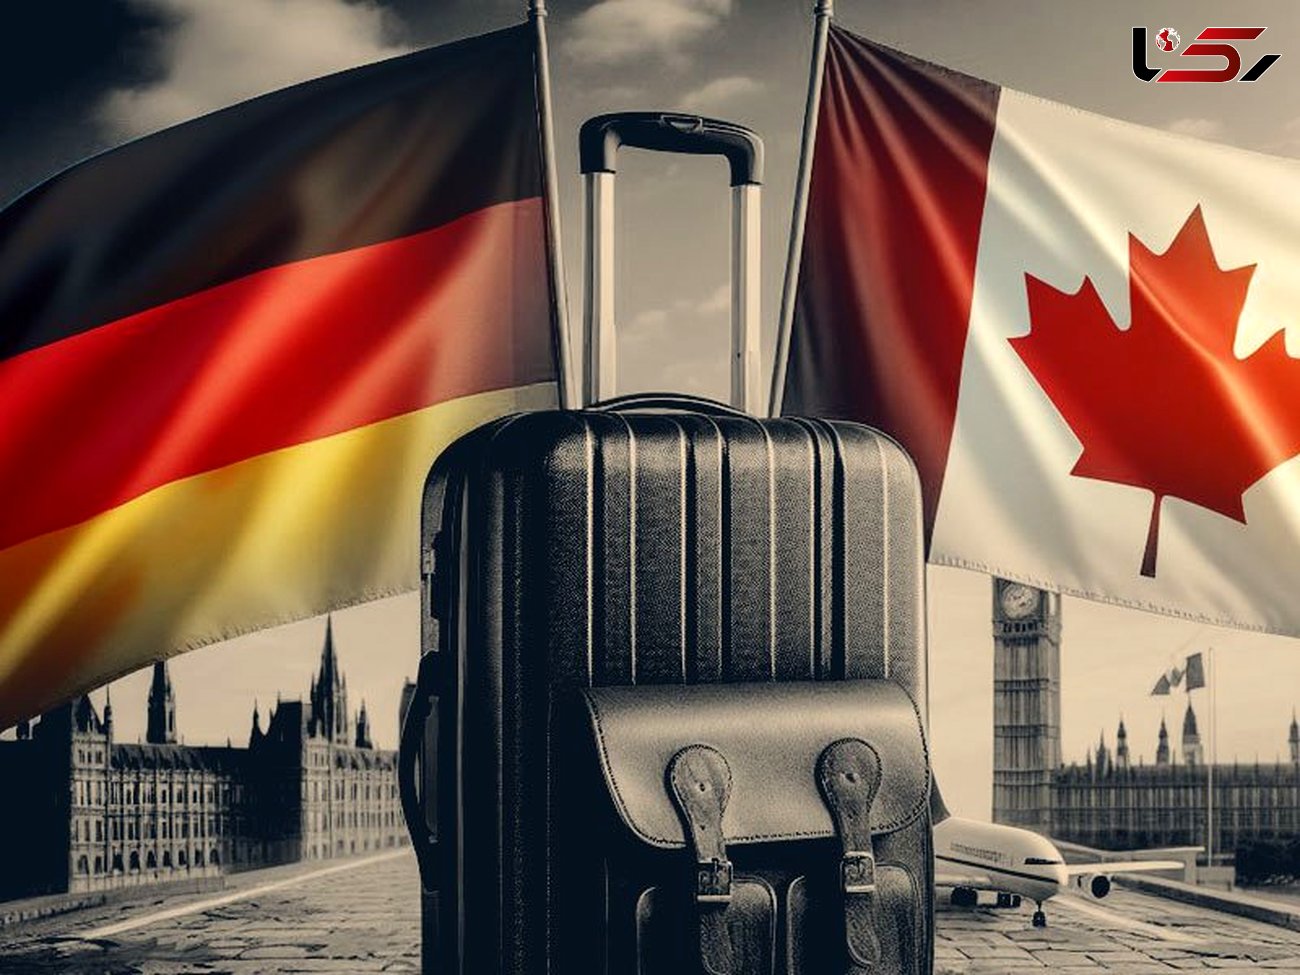 تحصیل در آلمان و مهاجرت به کانادا: راهنمایی برای آینده بهتر